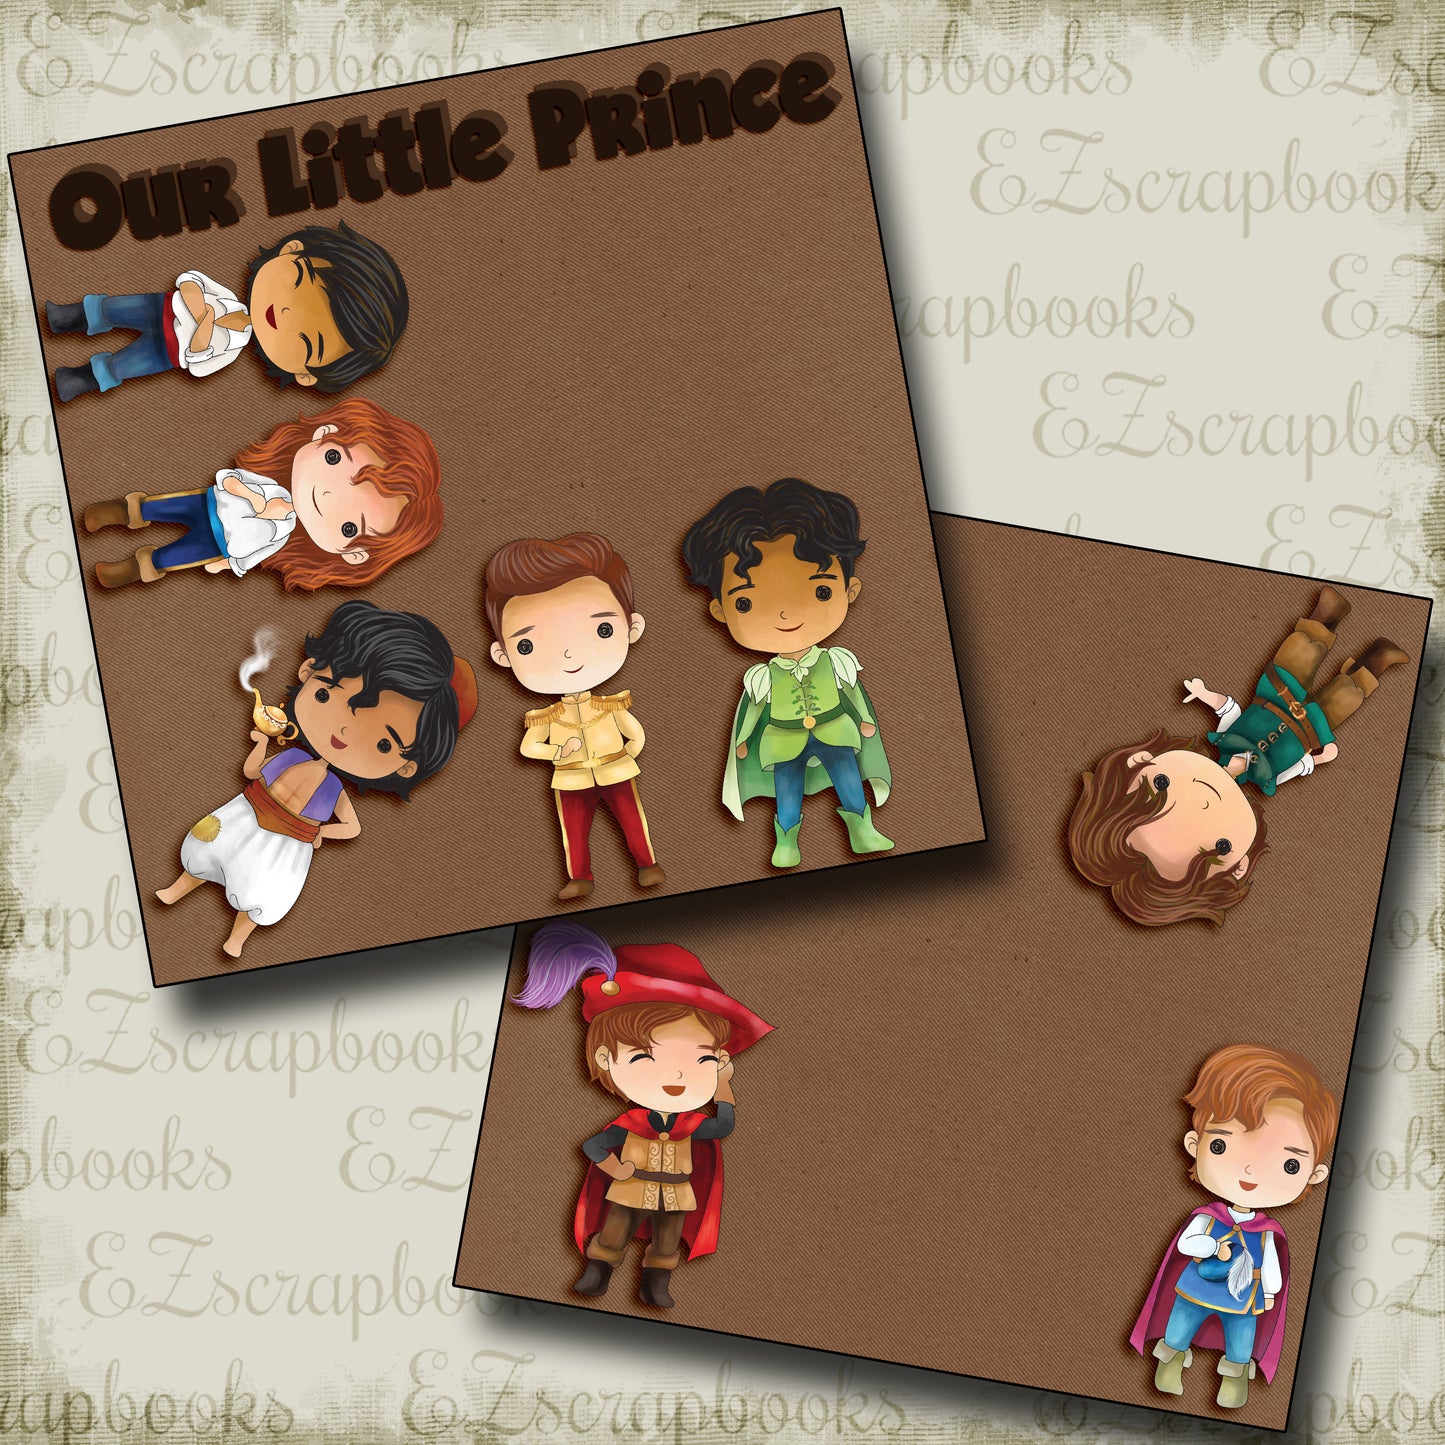 Our Little Prince NPM - 4531 - EZscrapbooks Scrapbook Layouts Disney